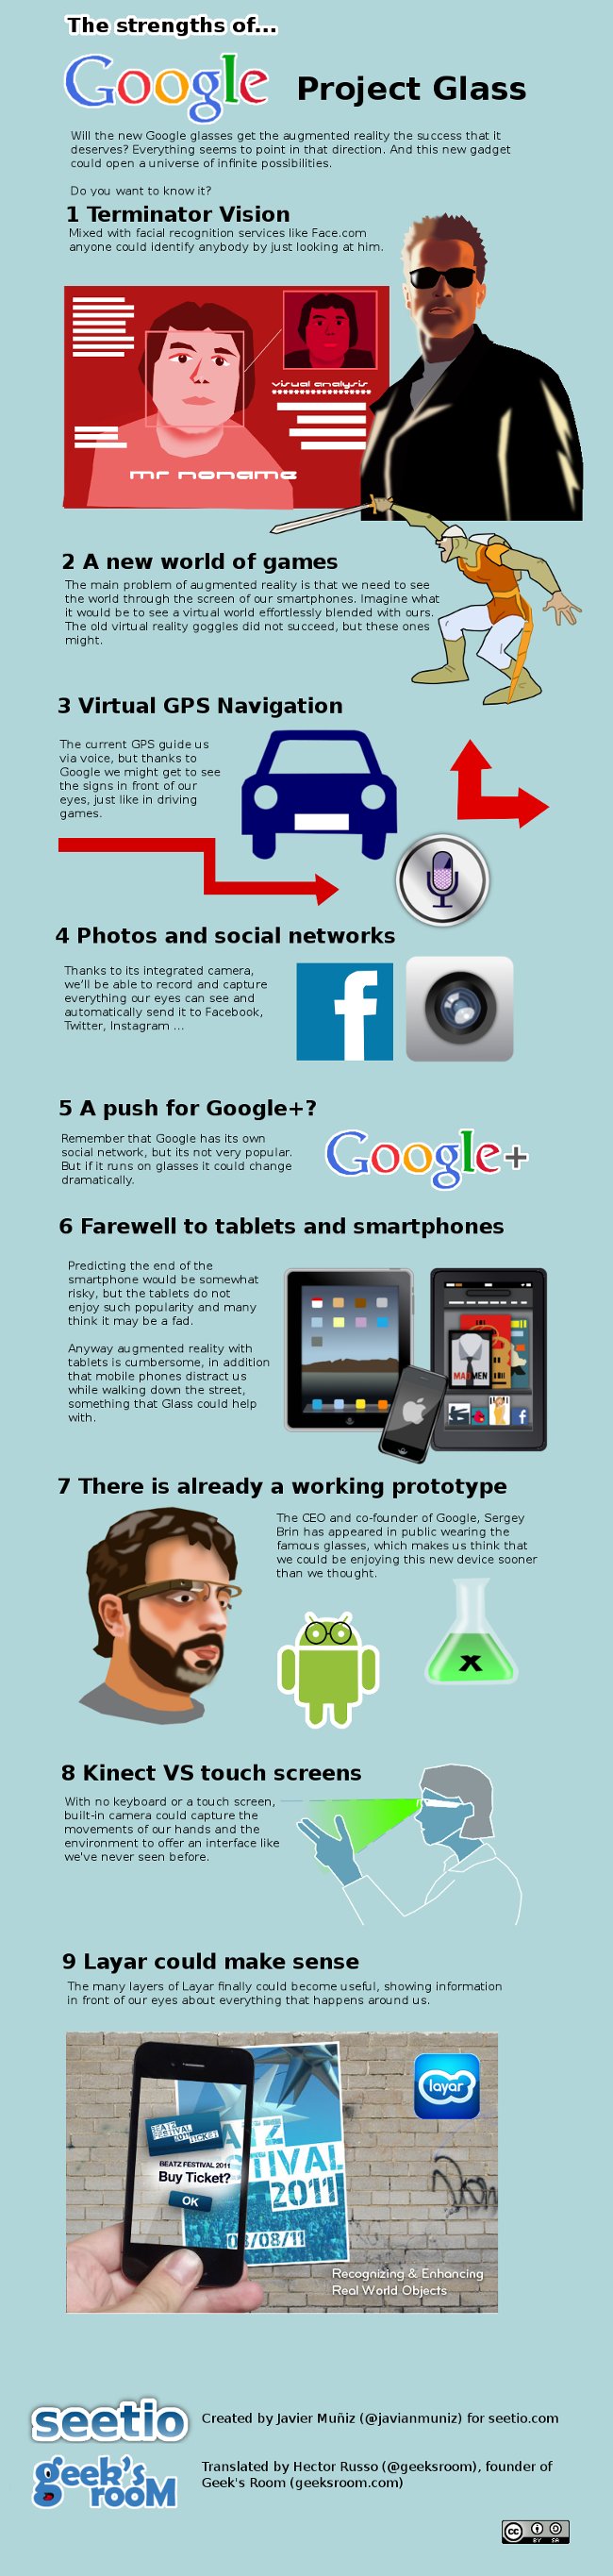 Google Project Glass Infografía en inglés 1